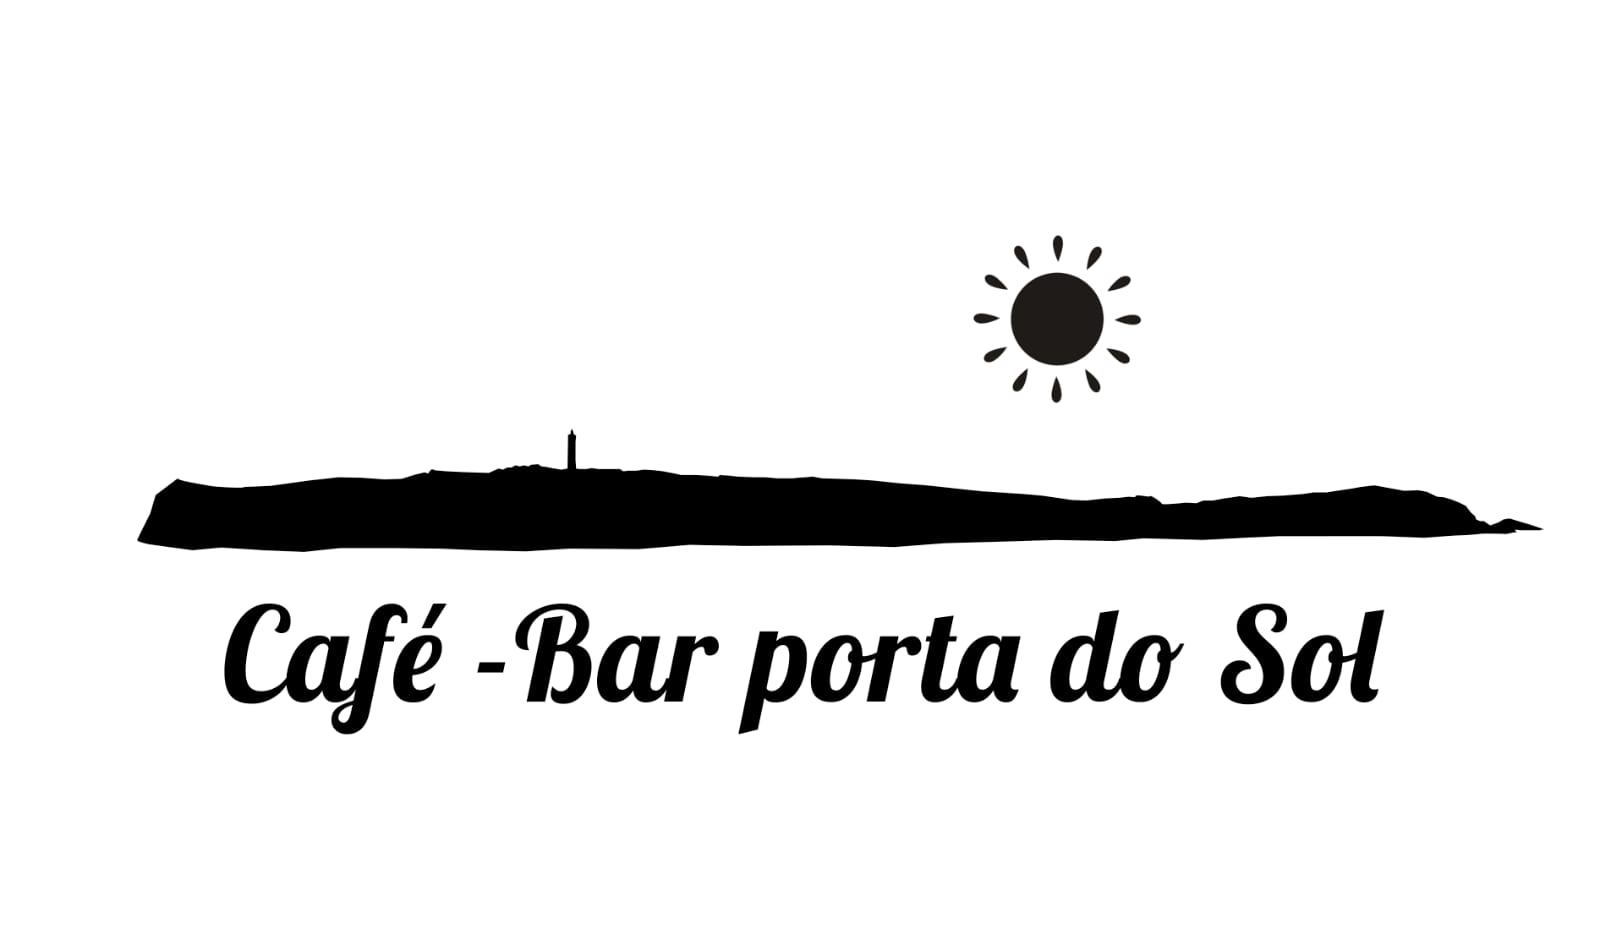 Café bar porta do sol